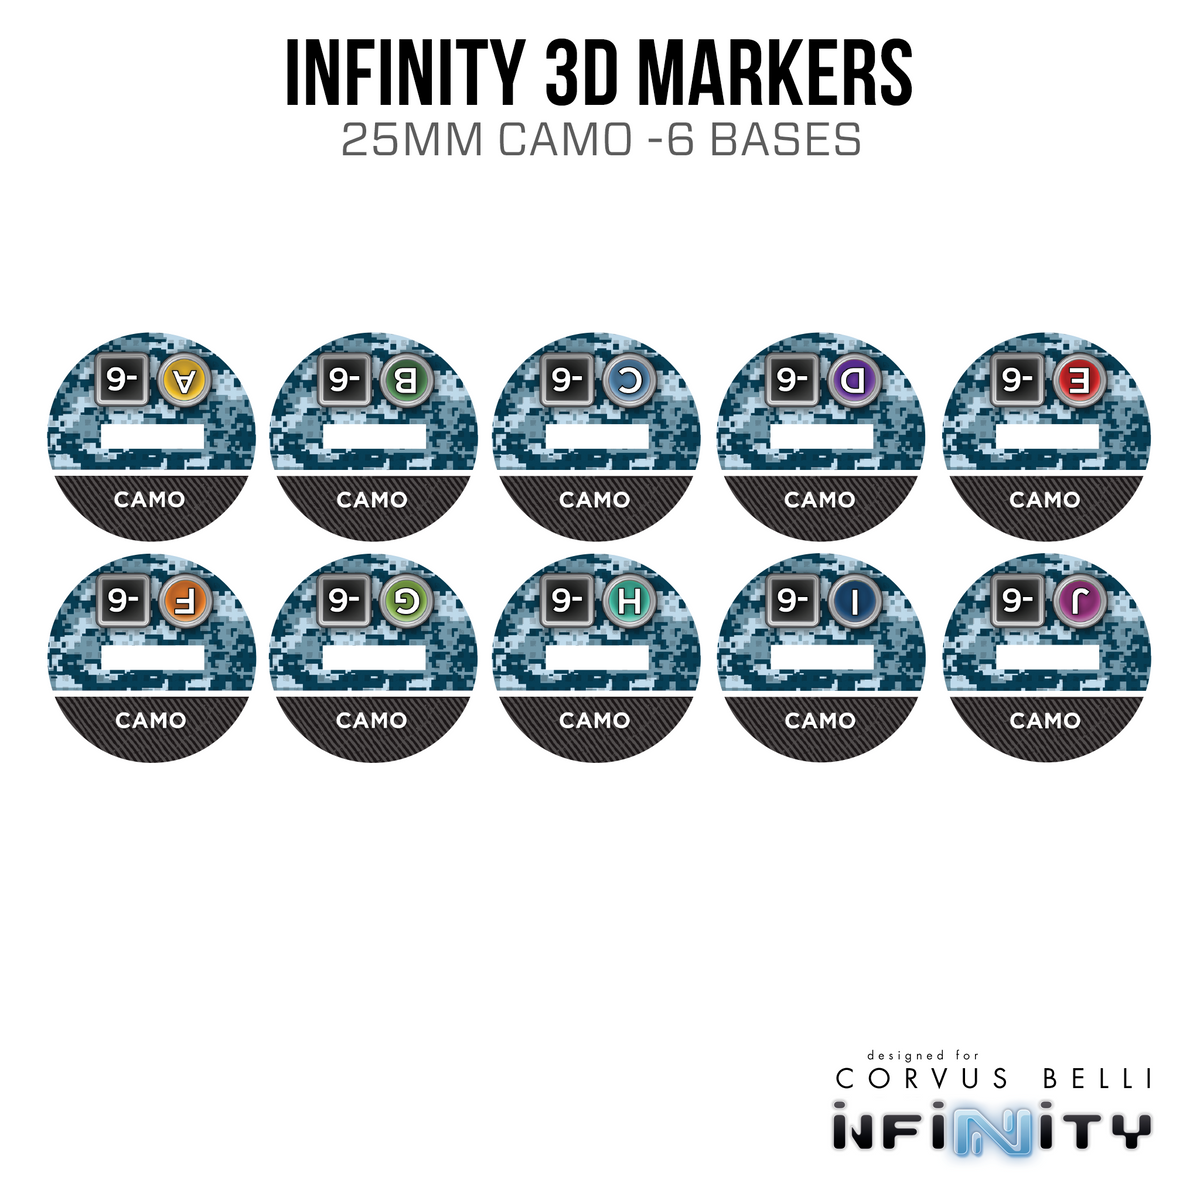 Marcadores 3D Infinity: Terciario trinitario (25 mm Camo -6)